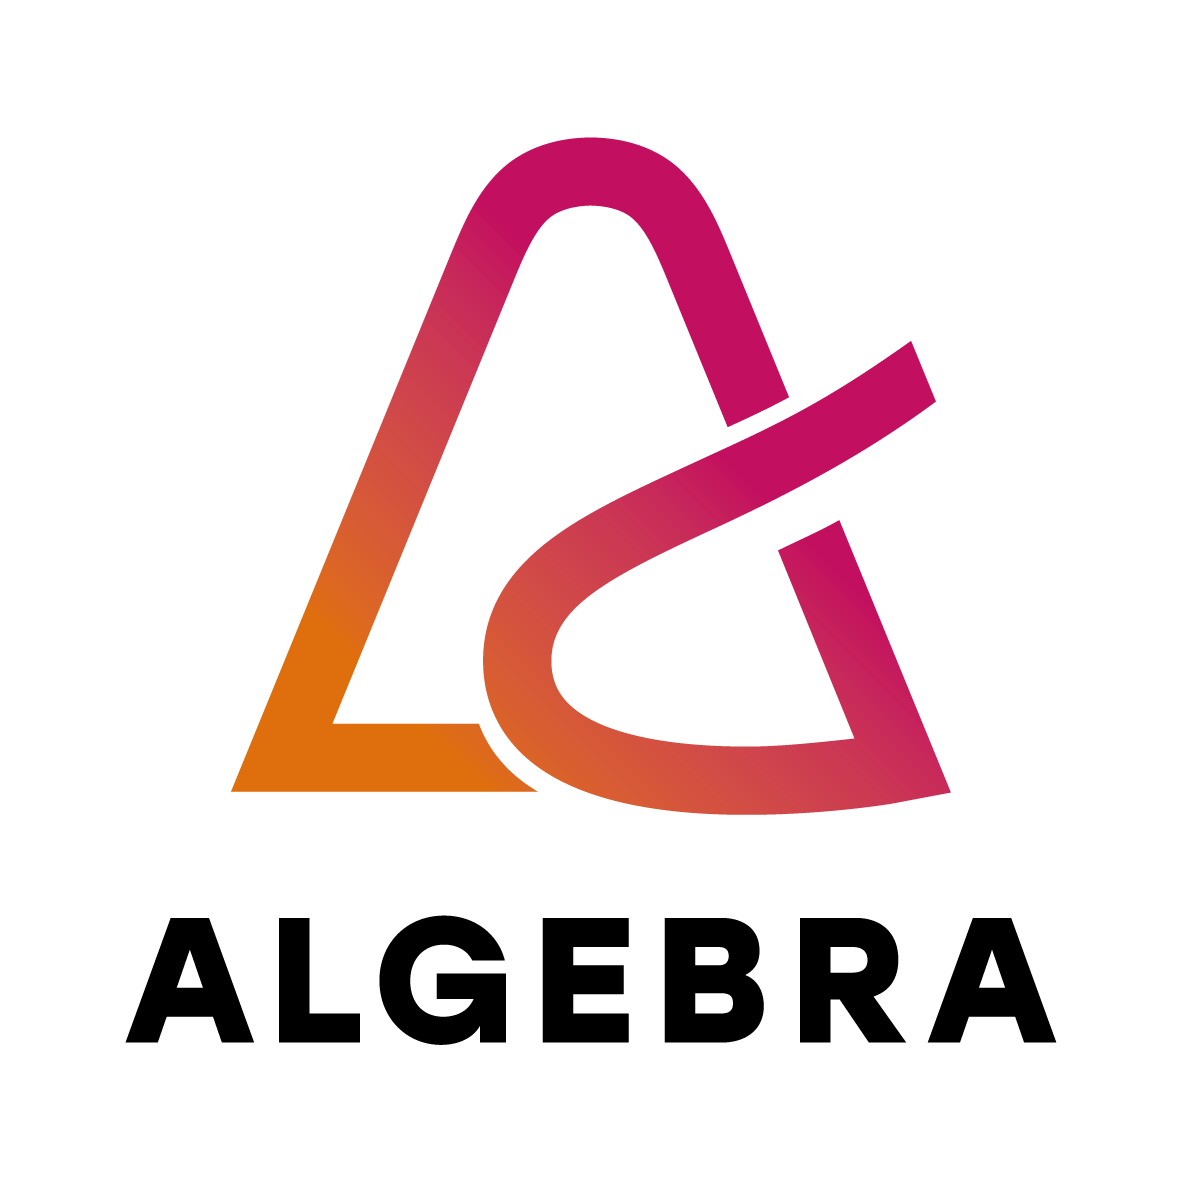 Algebra logo